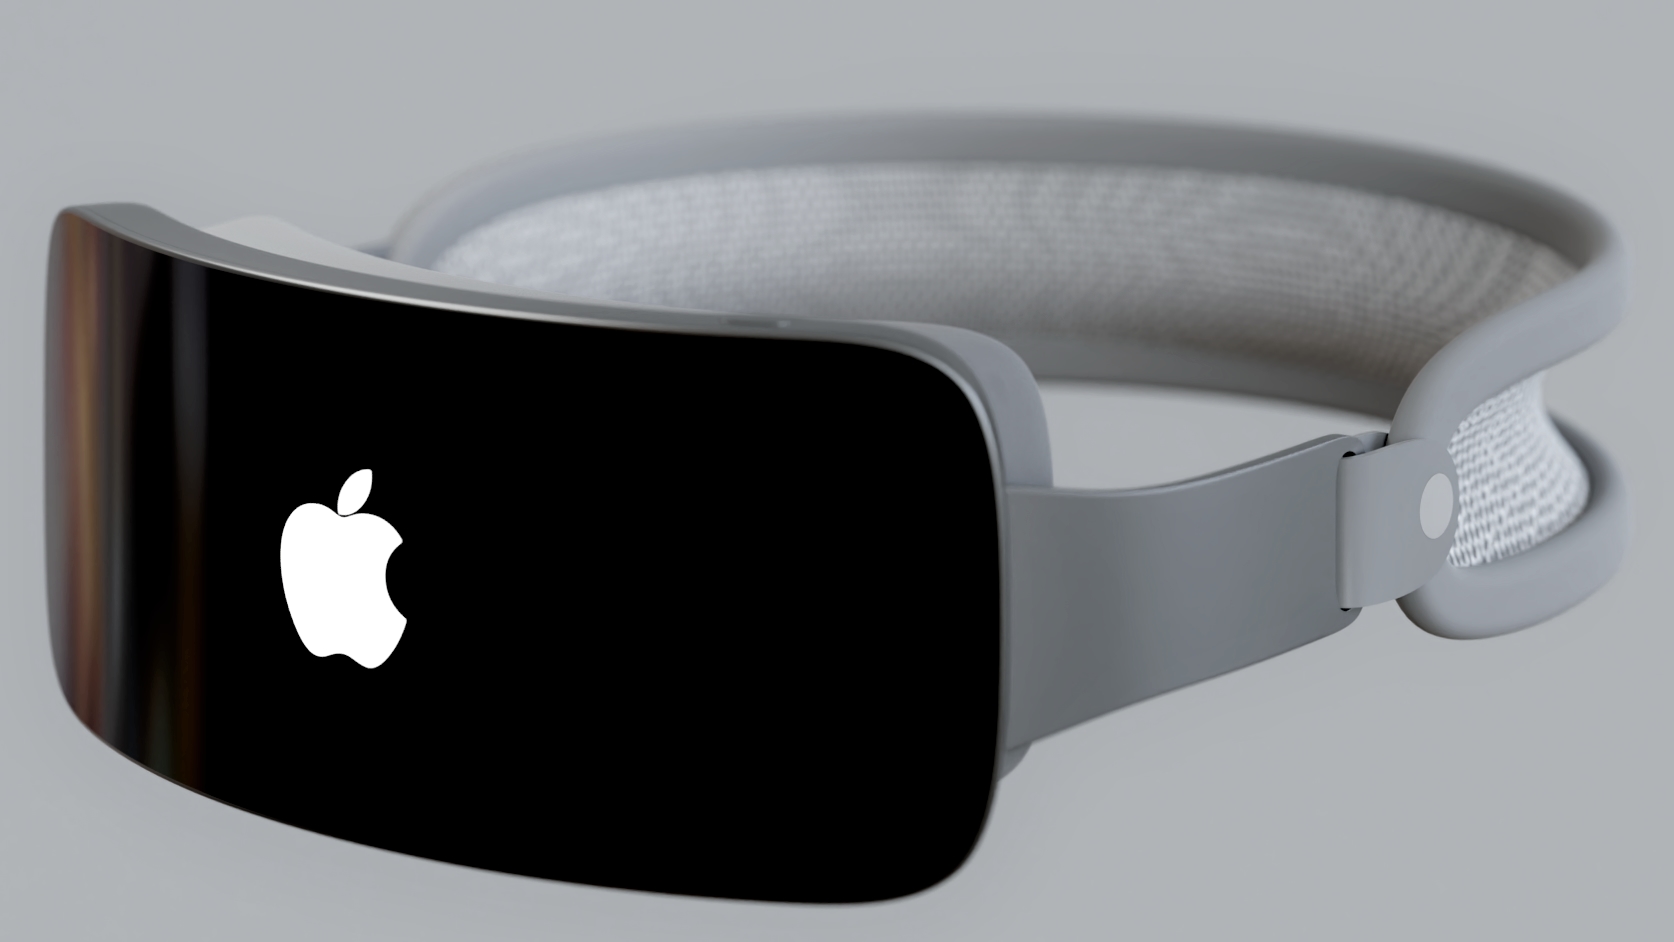 Rendu montrant un casque Apple avec le logo Apple sur l'écran externe